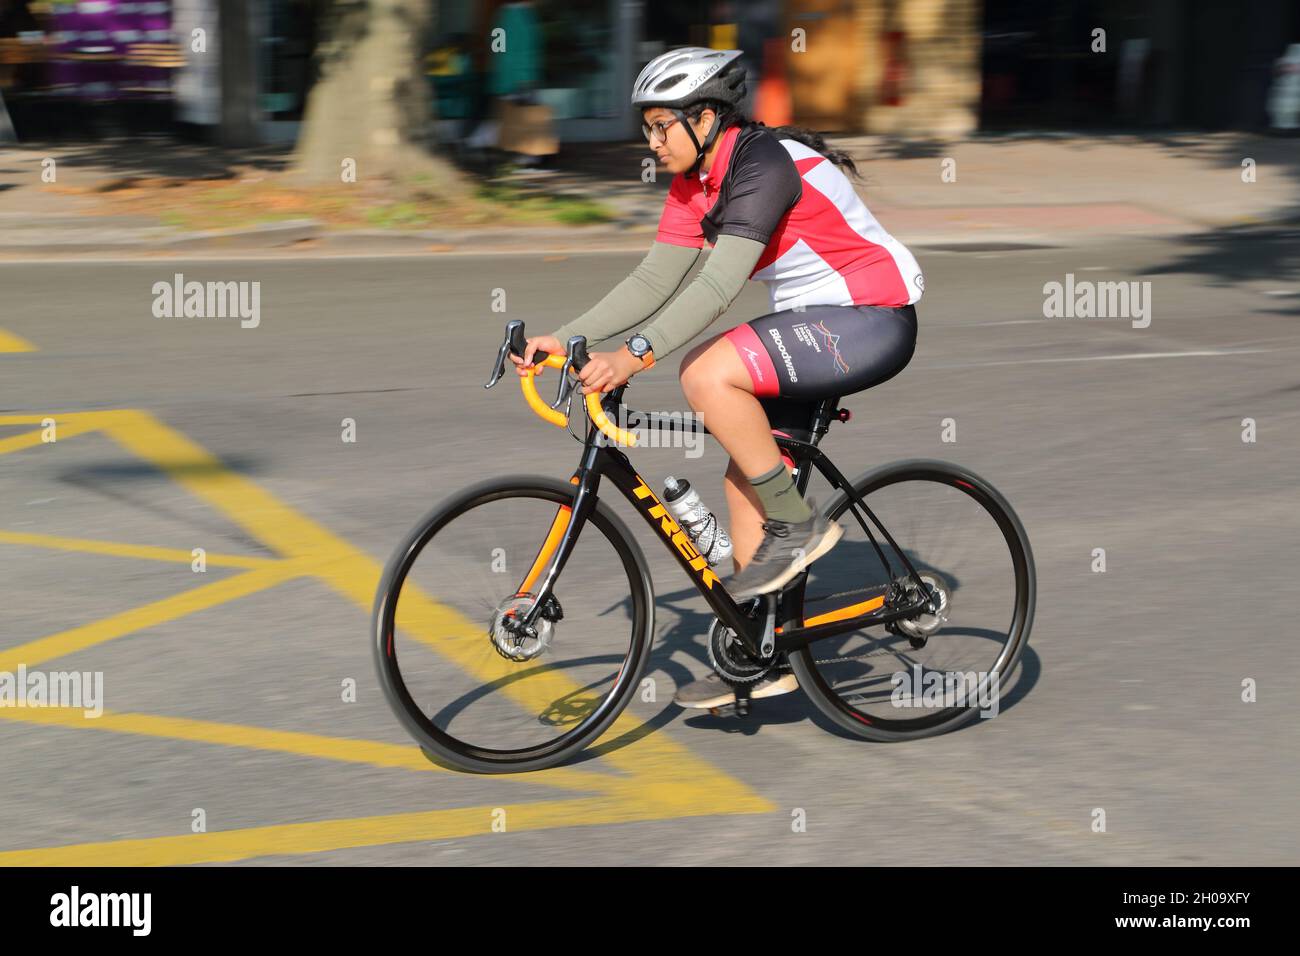 Una ciclista femenina que monta una bicicleta de carreras en Chiswick High Road, Londres, Reino Unido Foto de stock